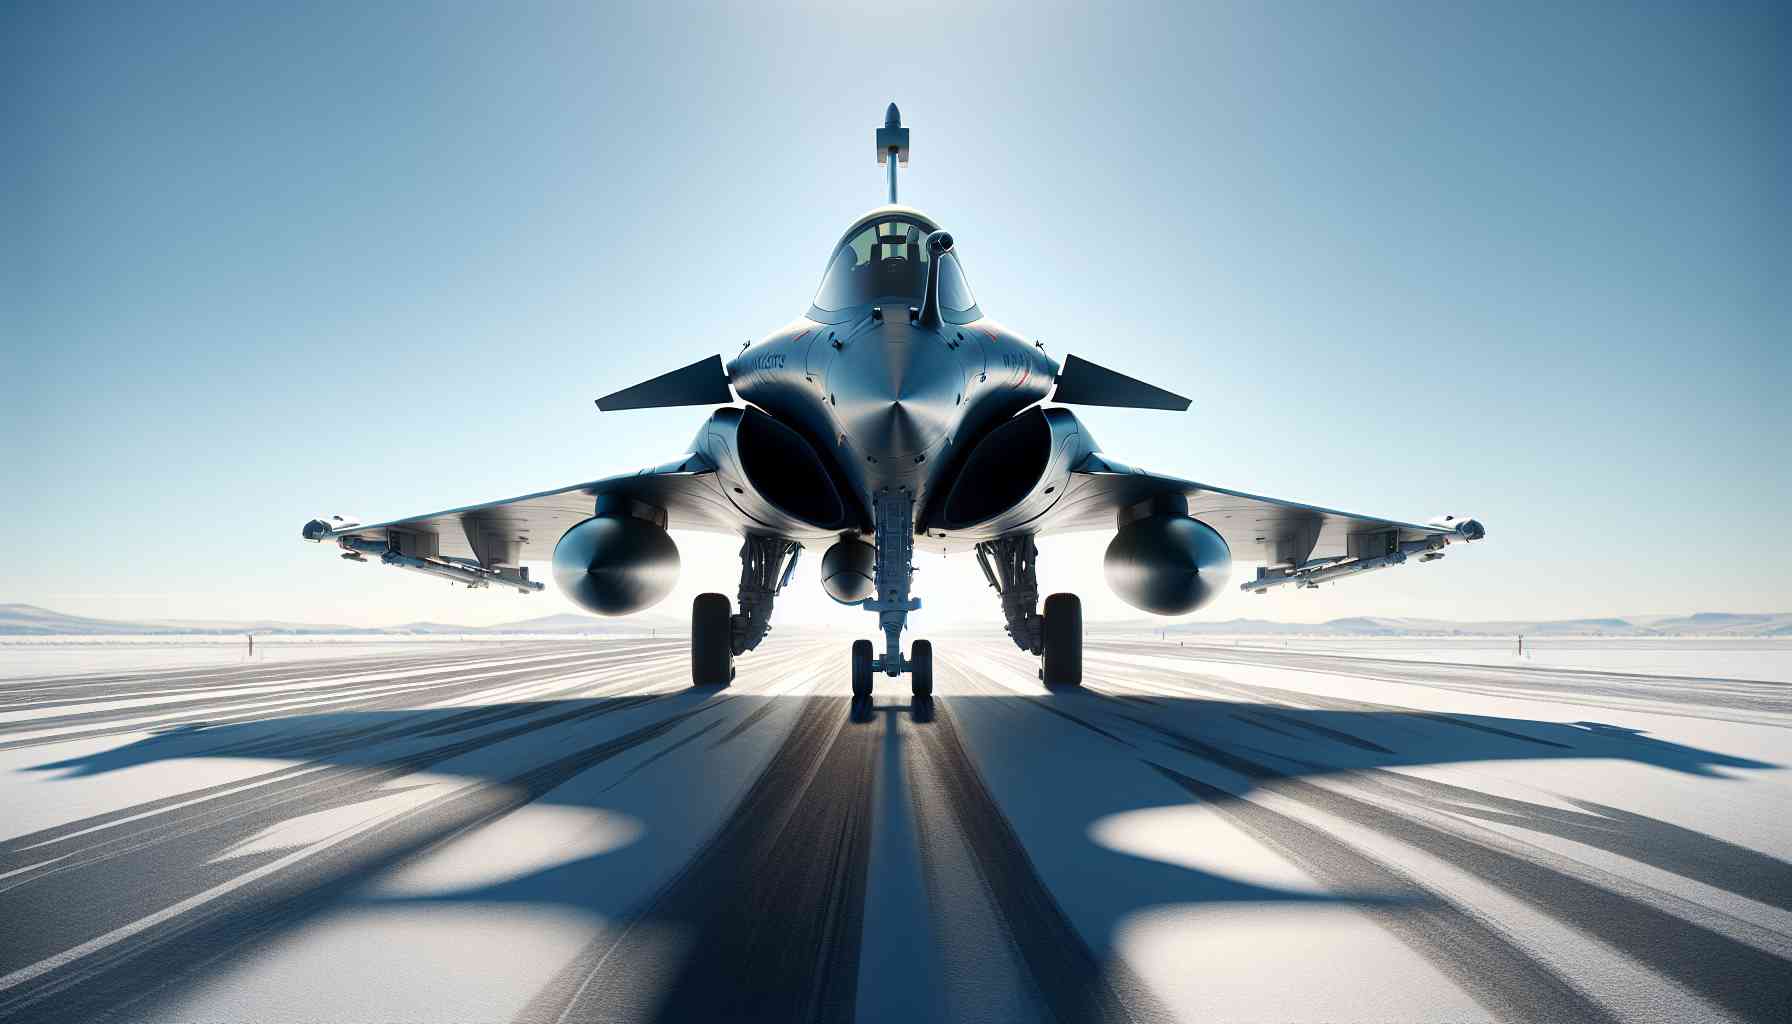 Is Dassault Rafale Stealth?